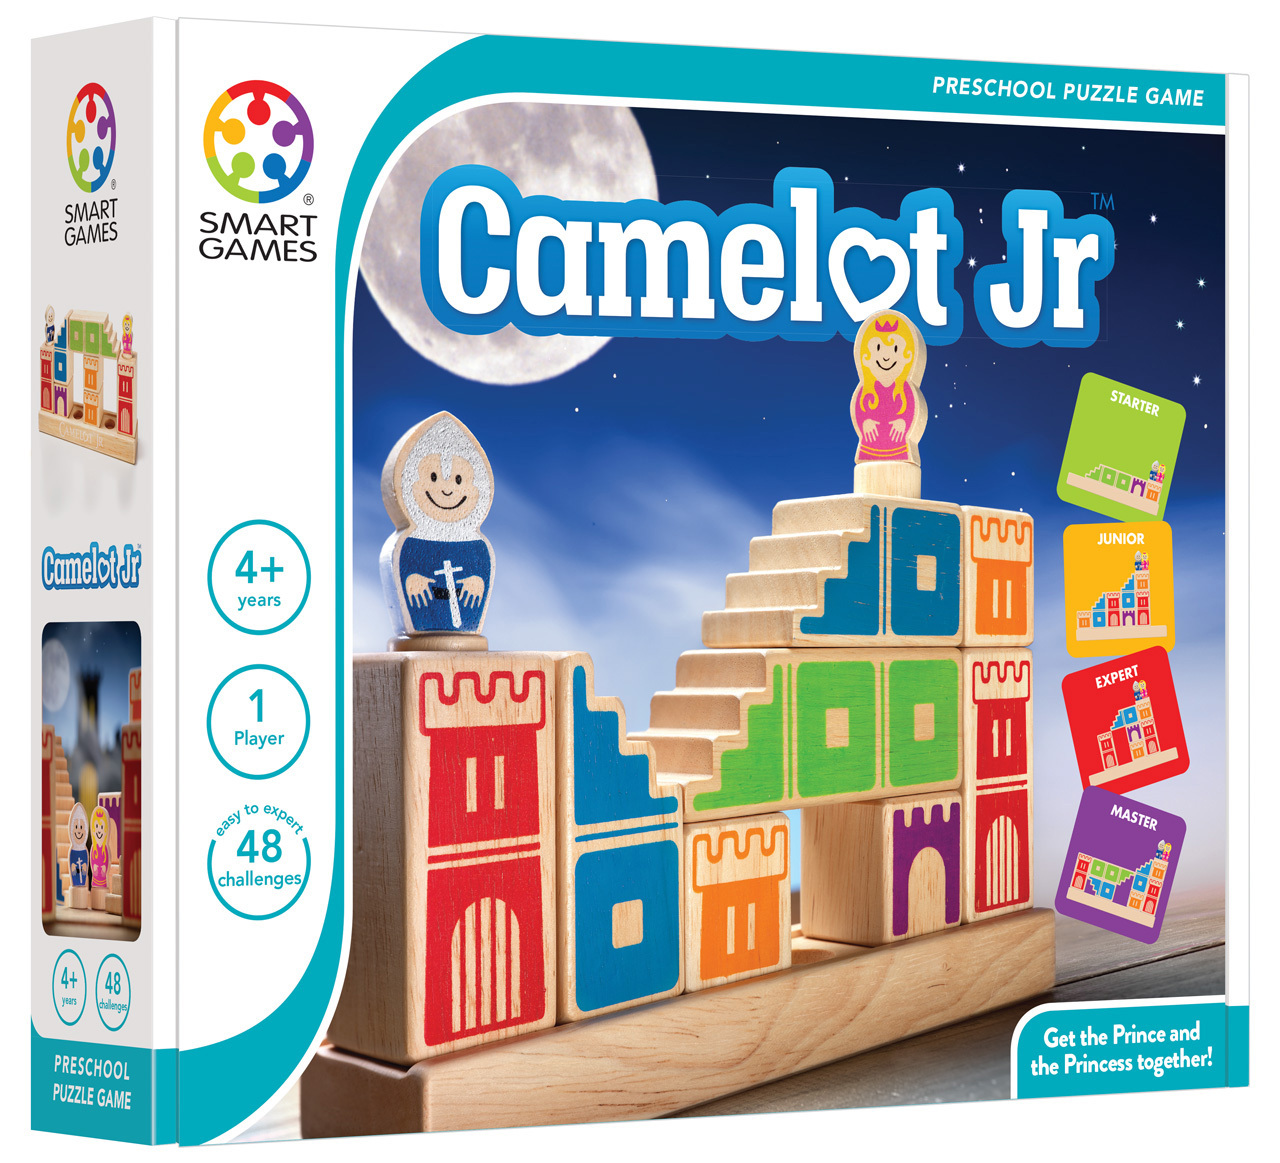 Smart games Camelot Jr.